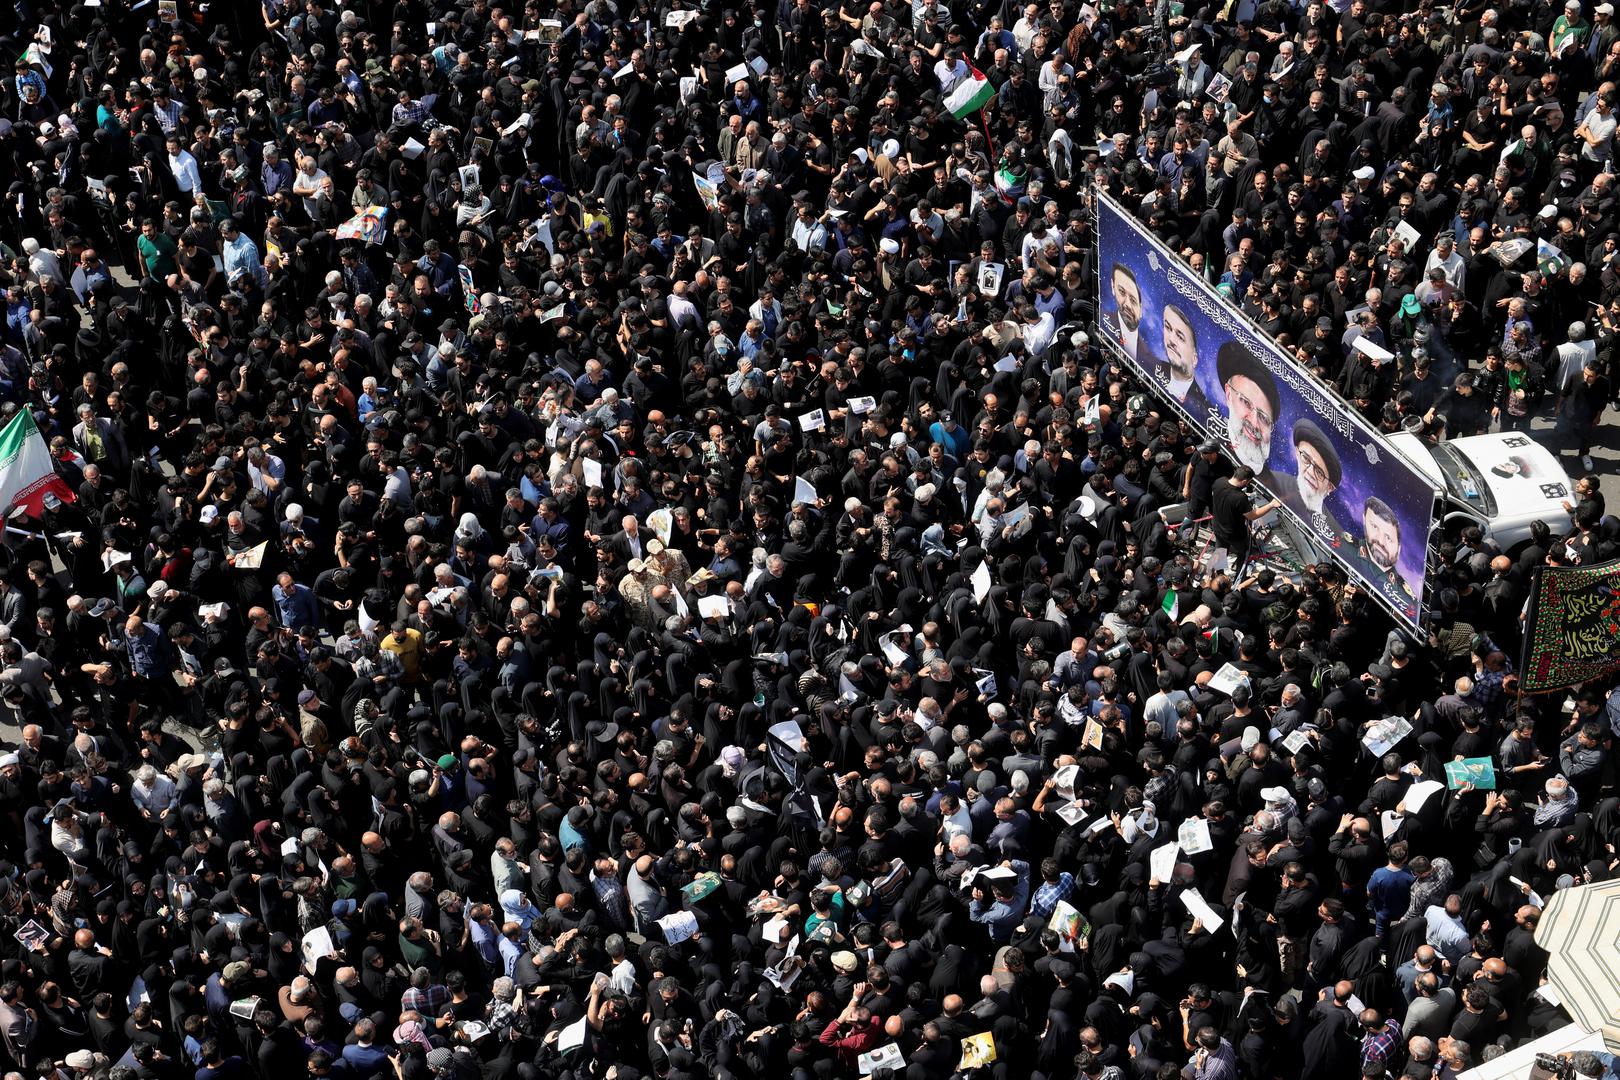 Mašući portretima pokojnog predsjednika i iranskim zastavama deseci tisuća Iranaca okupili su se u središtu Teherana kako bi odali posljednju počast poginulome iranskom predsjedniku.